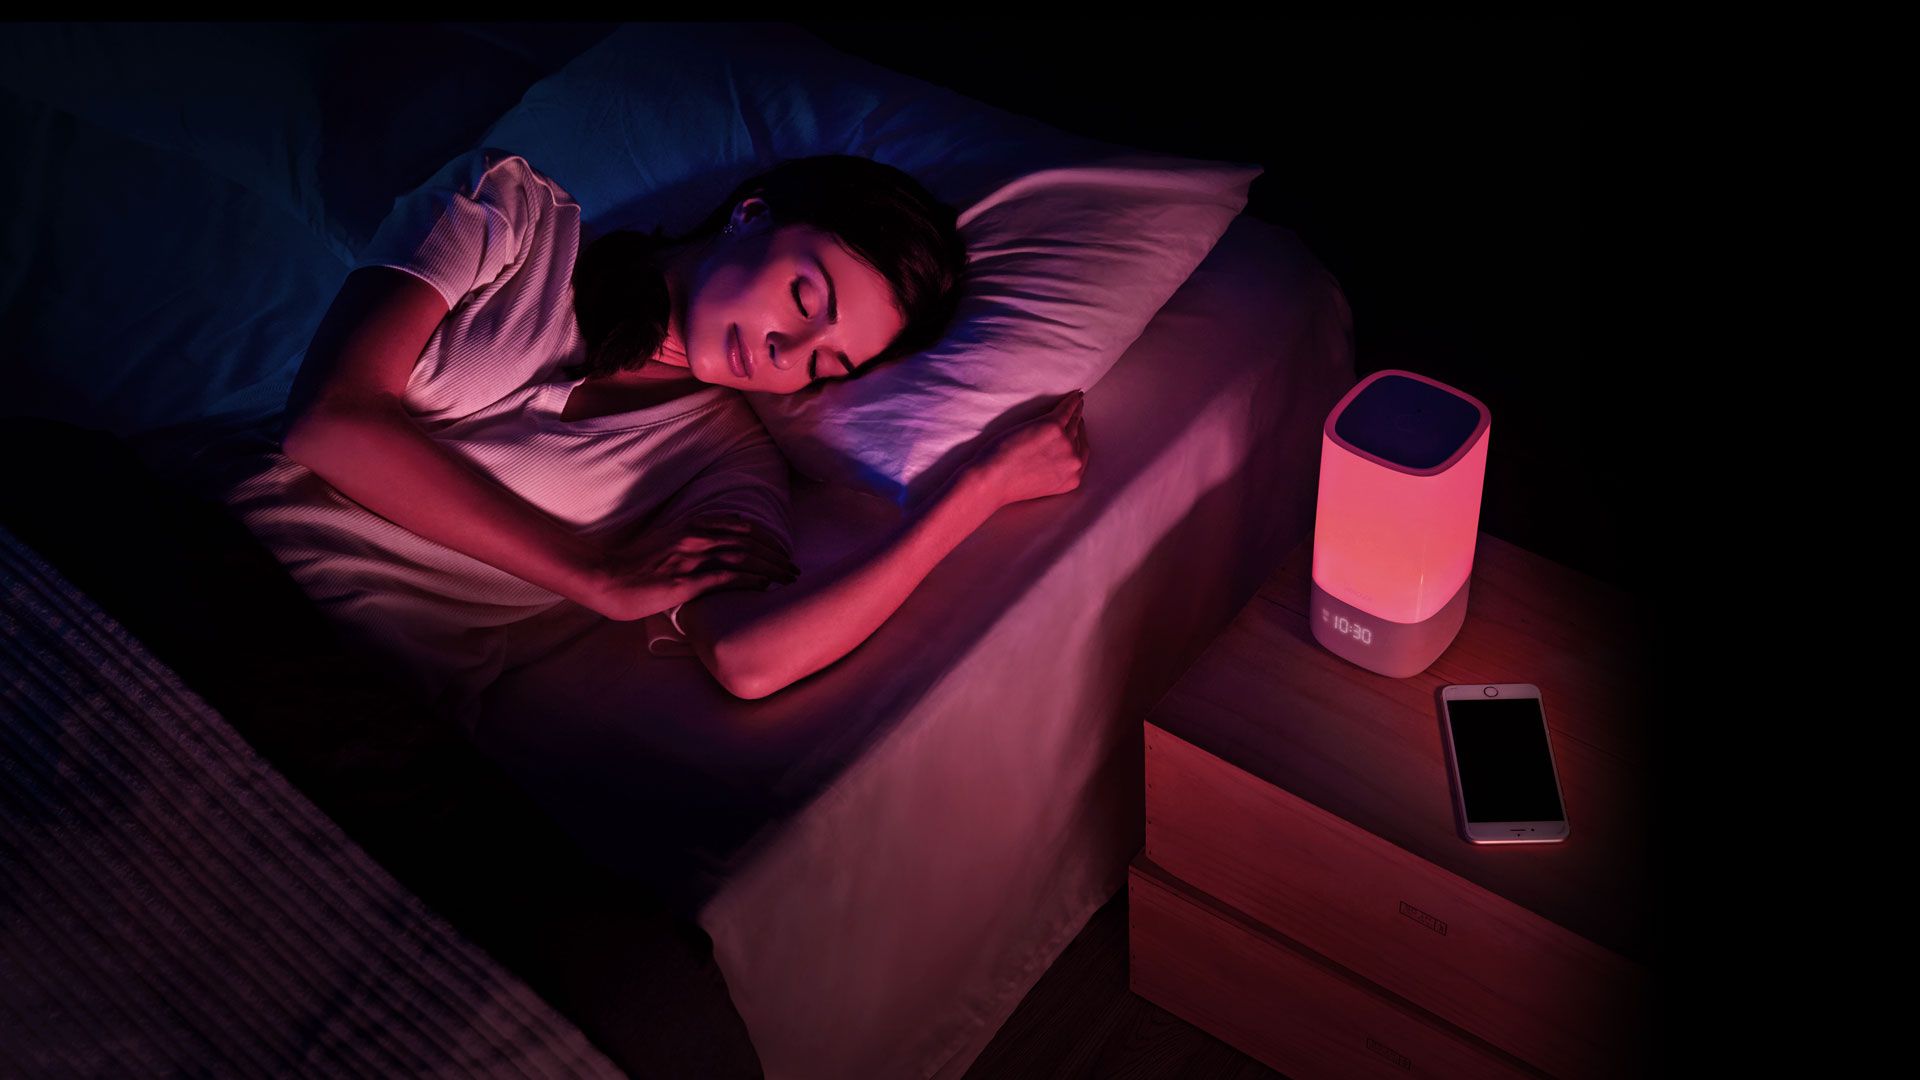 Can an Alarm Clock Really Help You Sleep Better?